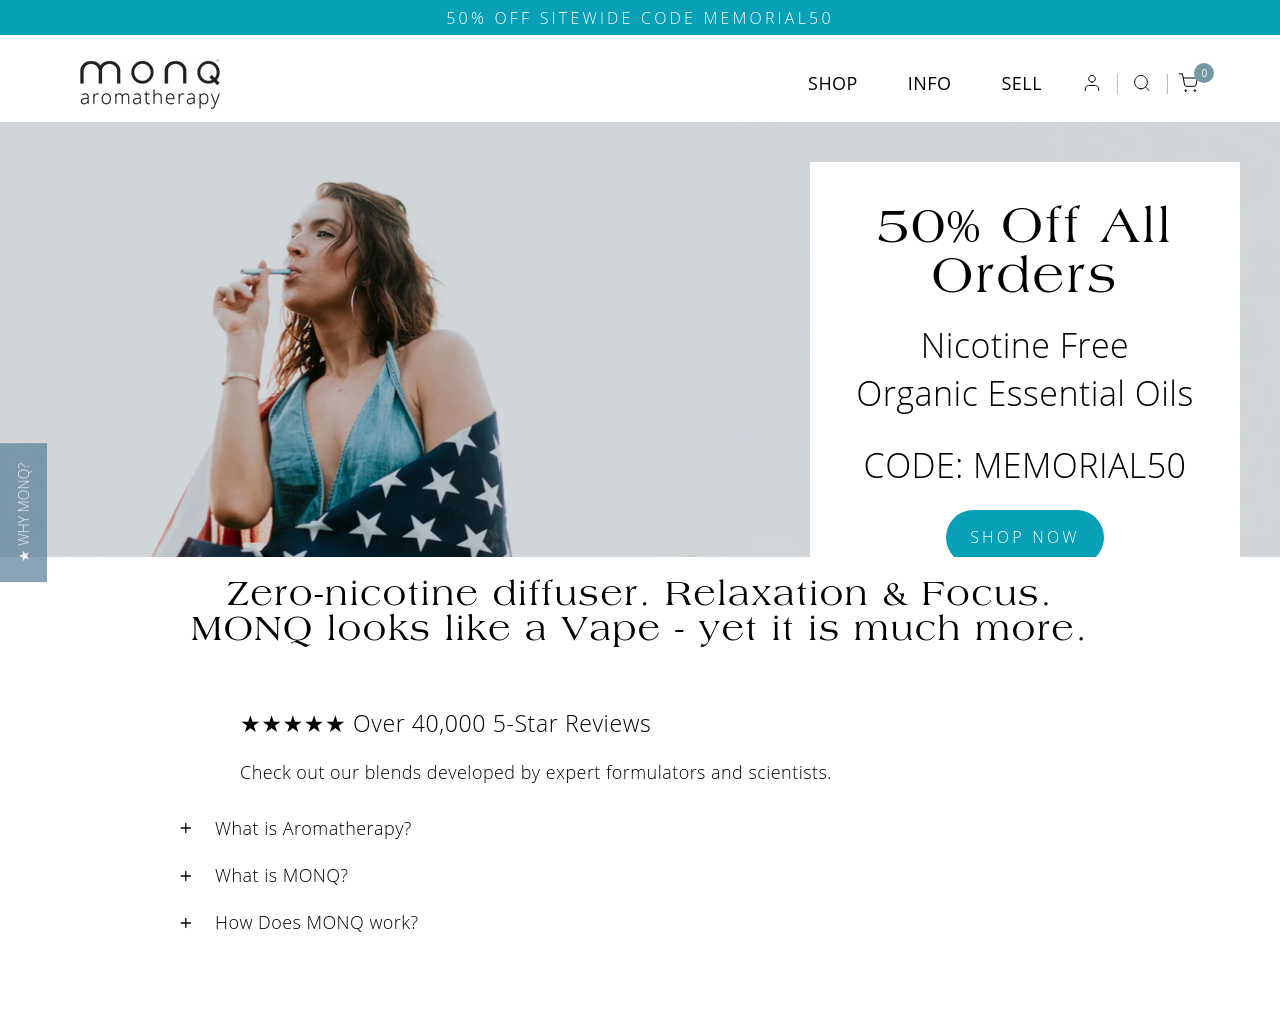 monq.com